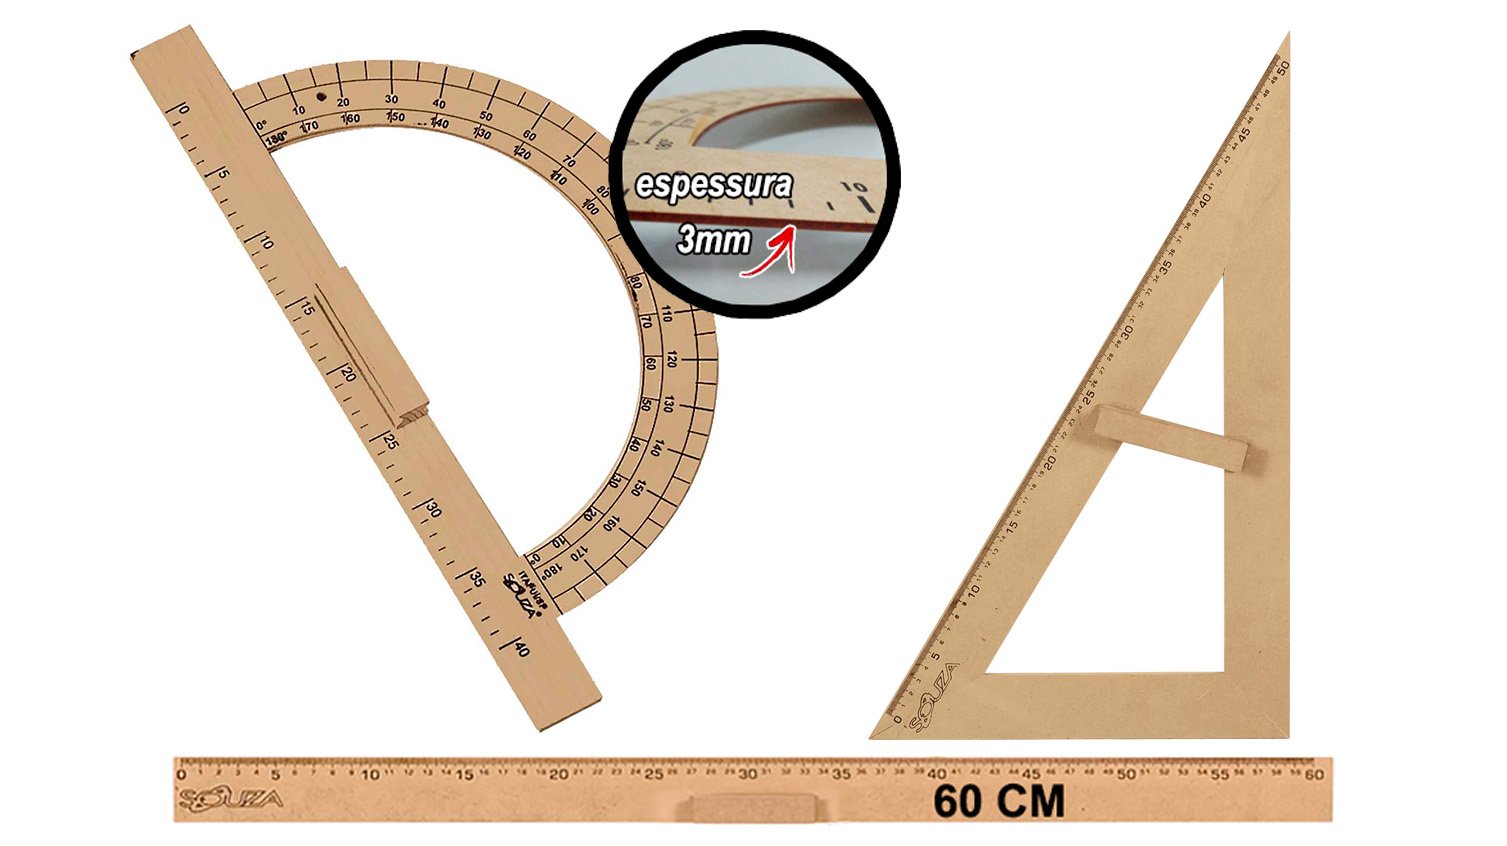 Kit Geométrico do Professor Mdf Com Régua 60 cm 1 Transferidor 180 Graus e 1 Esquadro 30º/60º Graus 